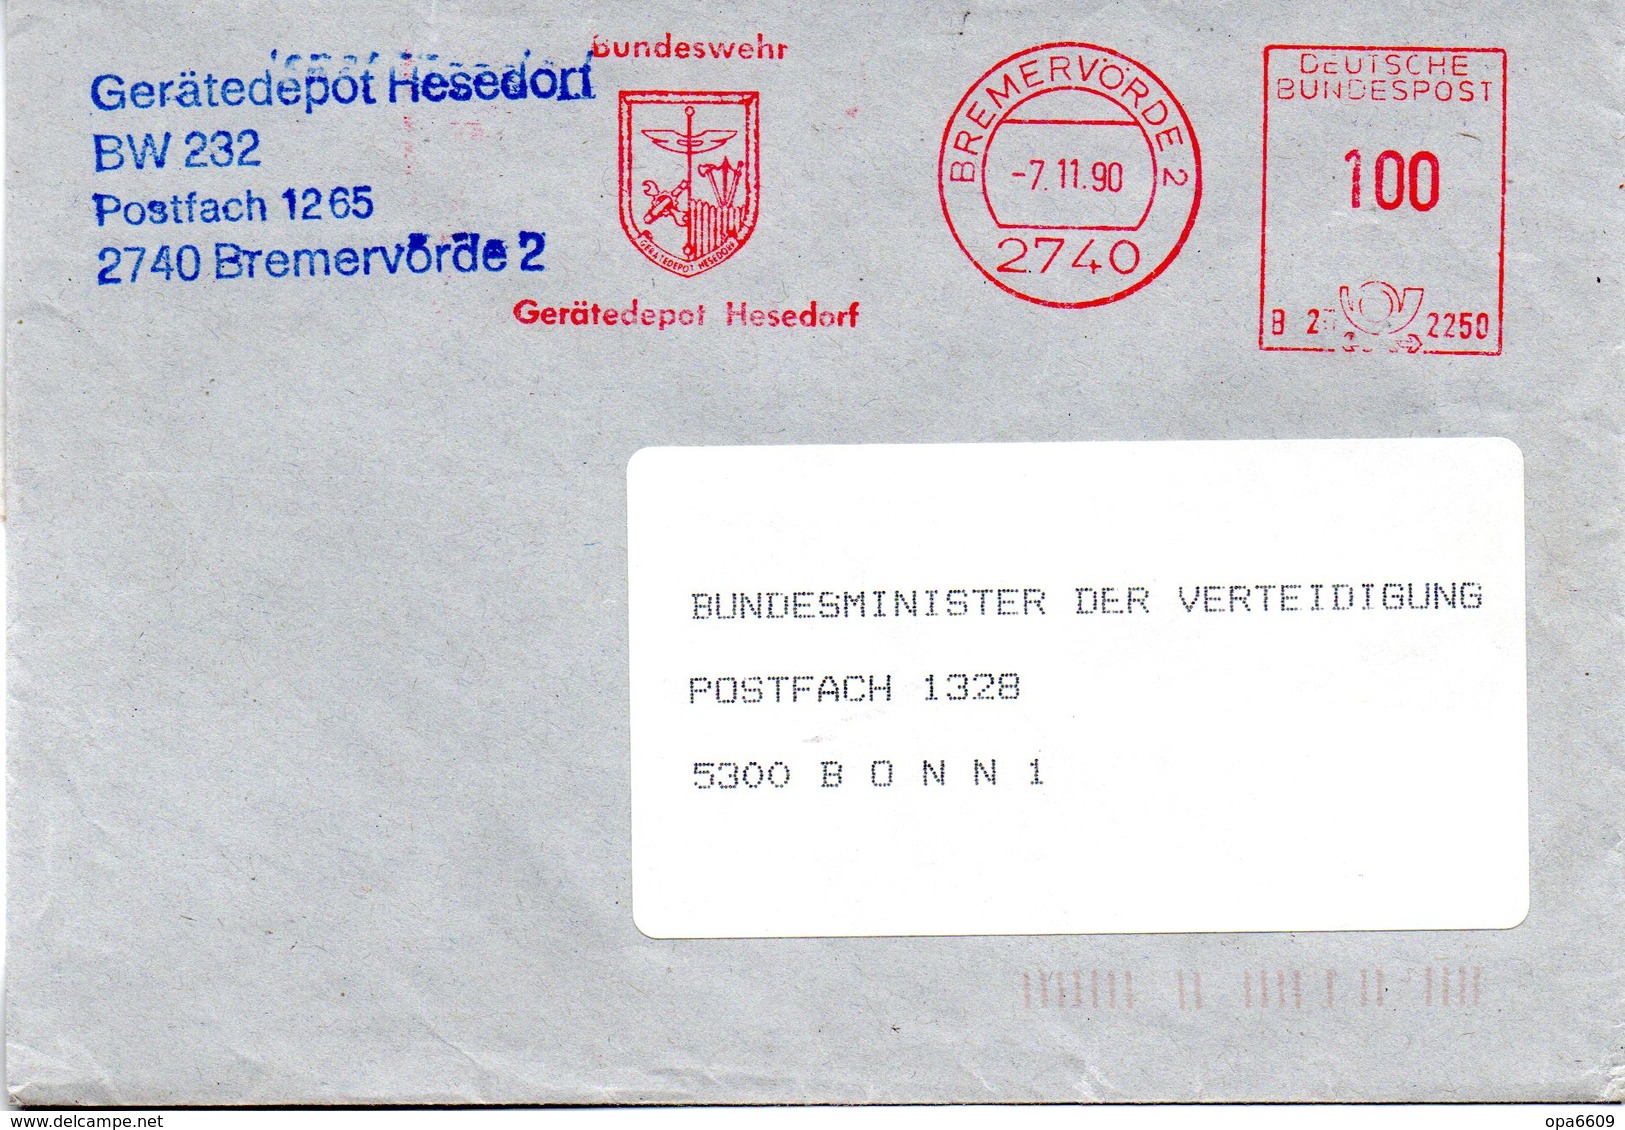 (FC-11) BRD AFS "BUNDESWEHR Gerätedepot Hesedorf" DEUTSCHE BUNDESPOST 100(Pf)  7.11.1990 BREMERVÖRDE 1 - Maschinenstempel (EMA)